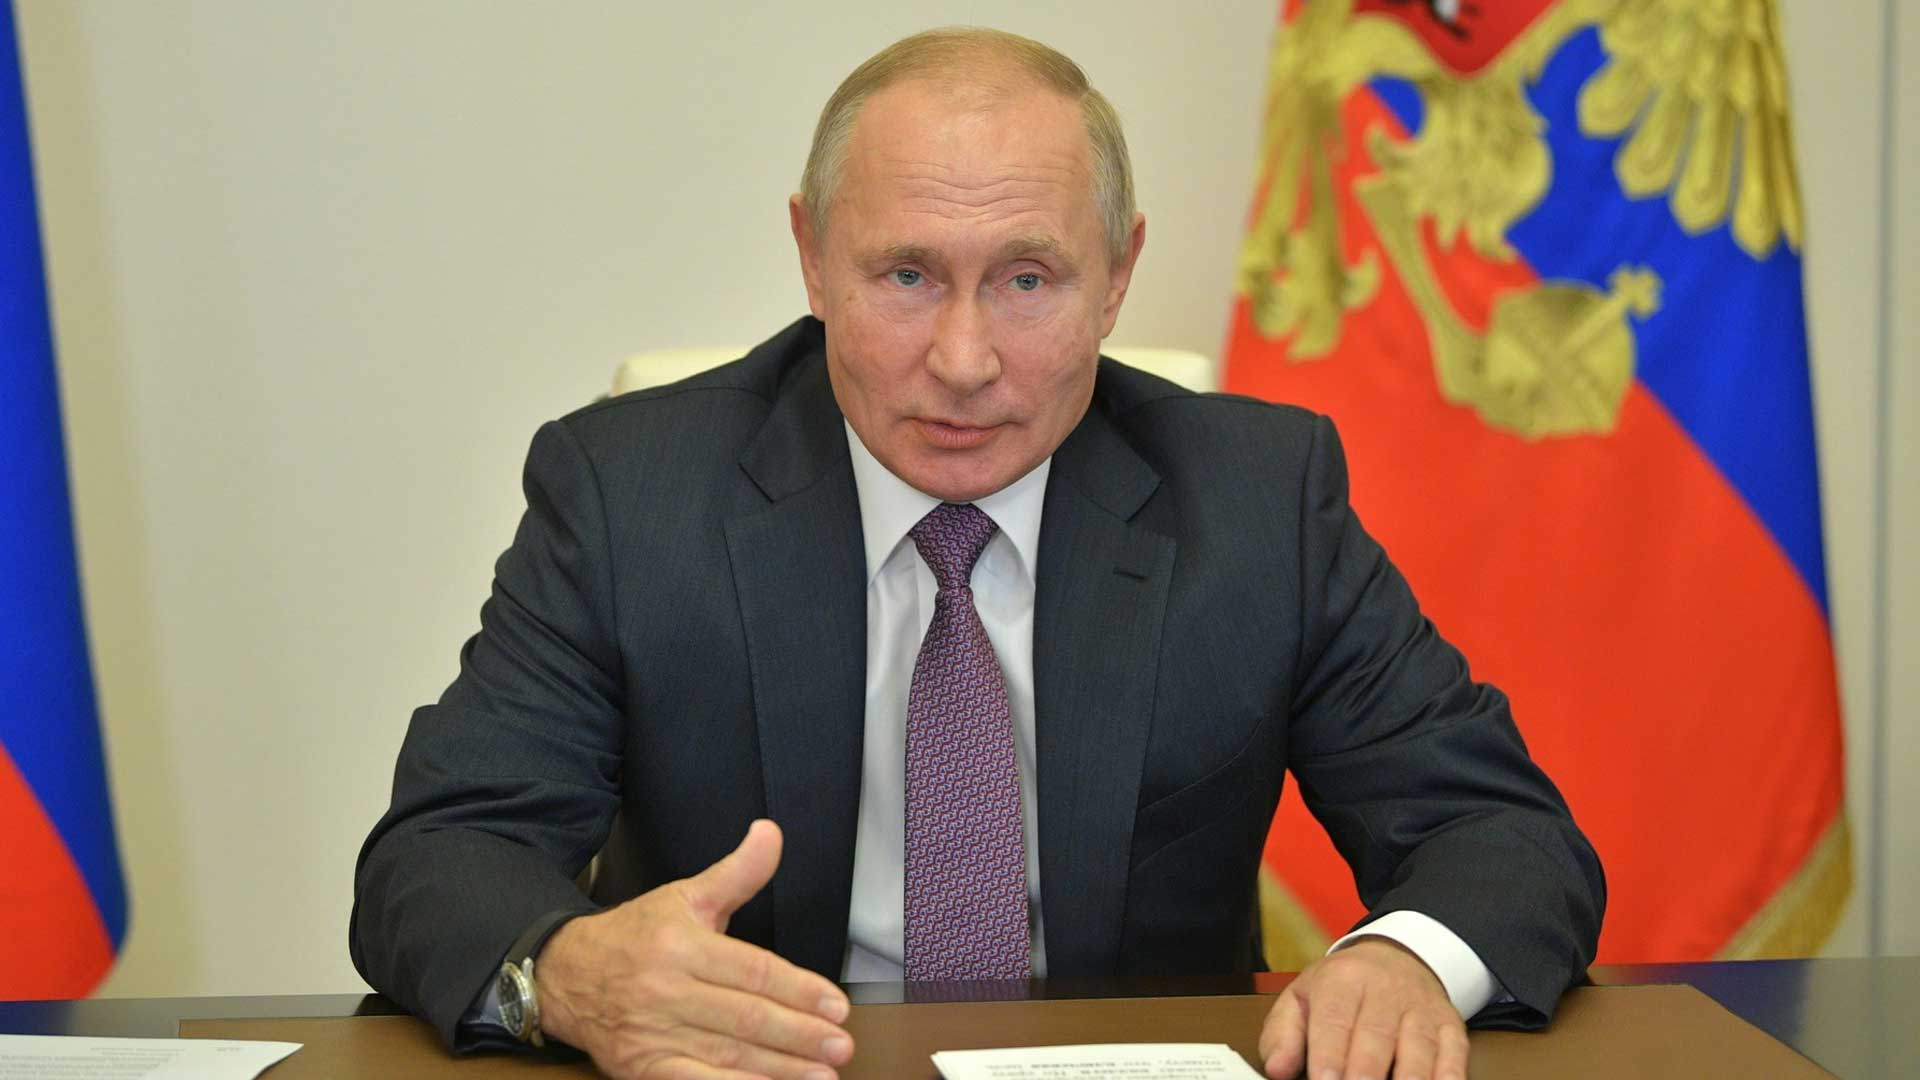 По словам главы государства, уверенному в себе и своей правоте человеку все по плечу Фото: © GLOBAL LOOK press / Kremlin Pool